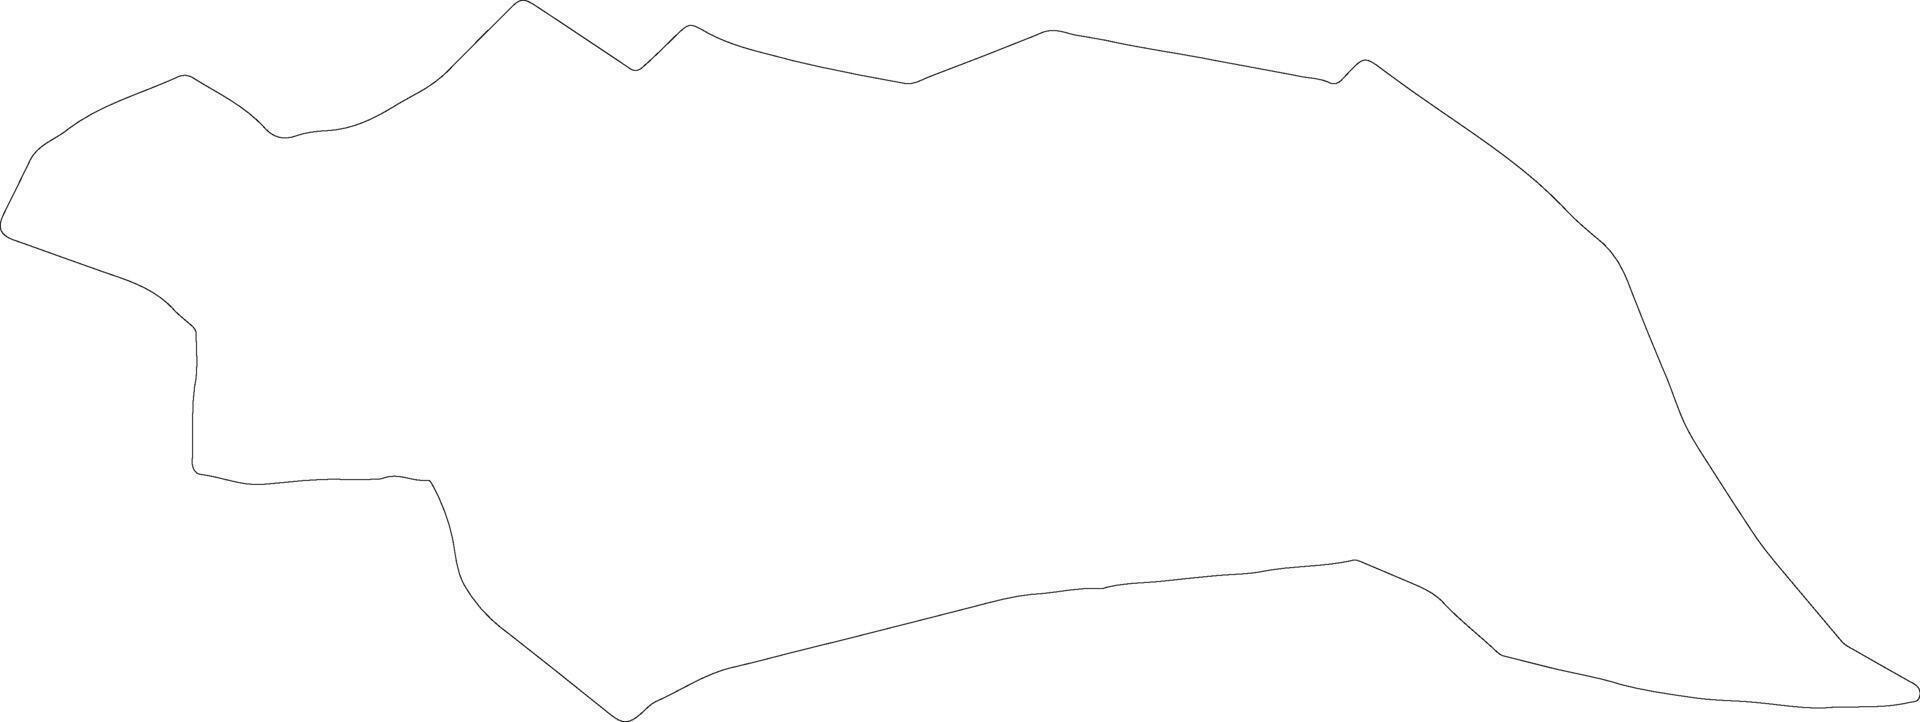 famagosta Cipro schema carta geografica vettore